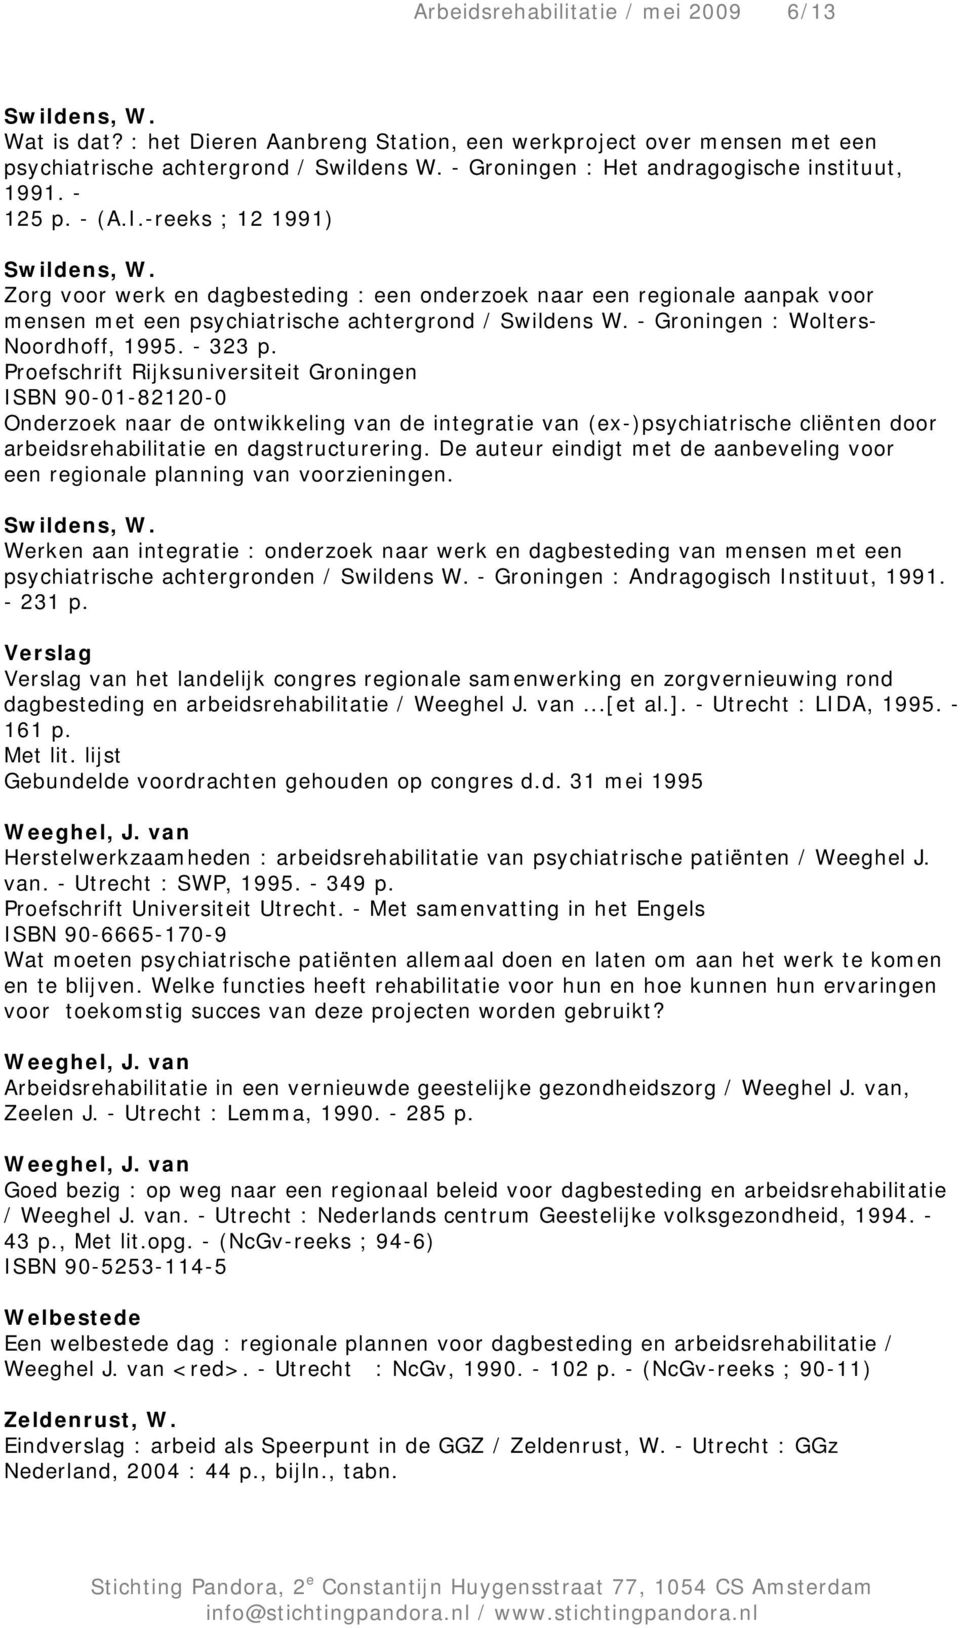 Zorg voor werk en dagbesteding : een onderzoek naar een regionale aanpak voor mensen met een psychiatrische achtergrond / Swildens W. - Groningen : Wolters- Noordhoff, 1995. - 323 p.